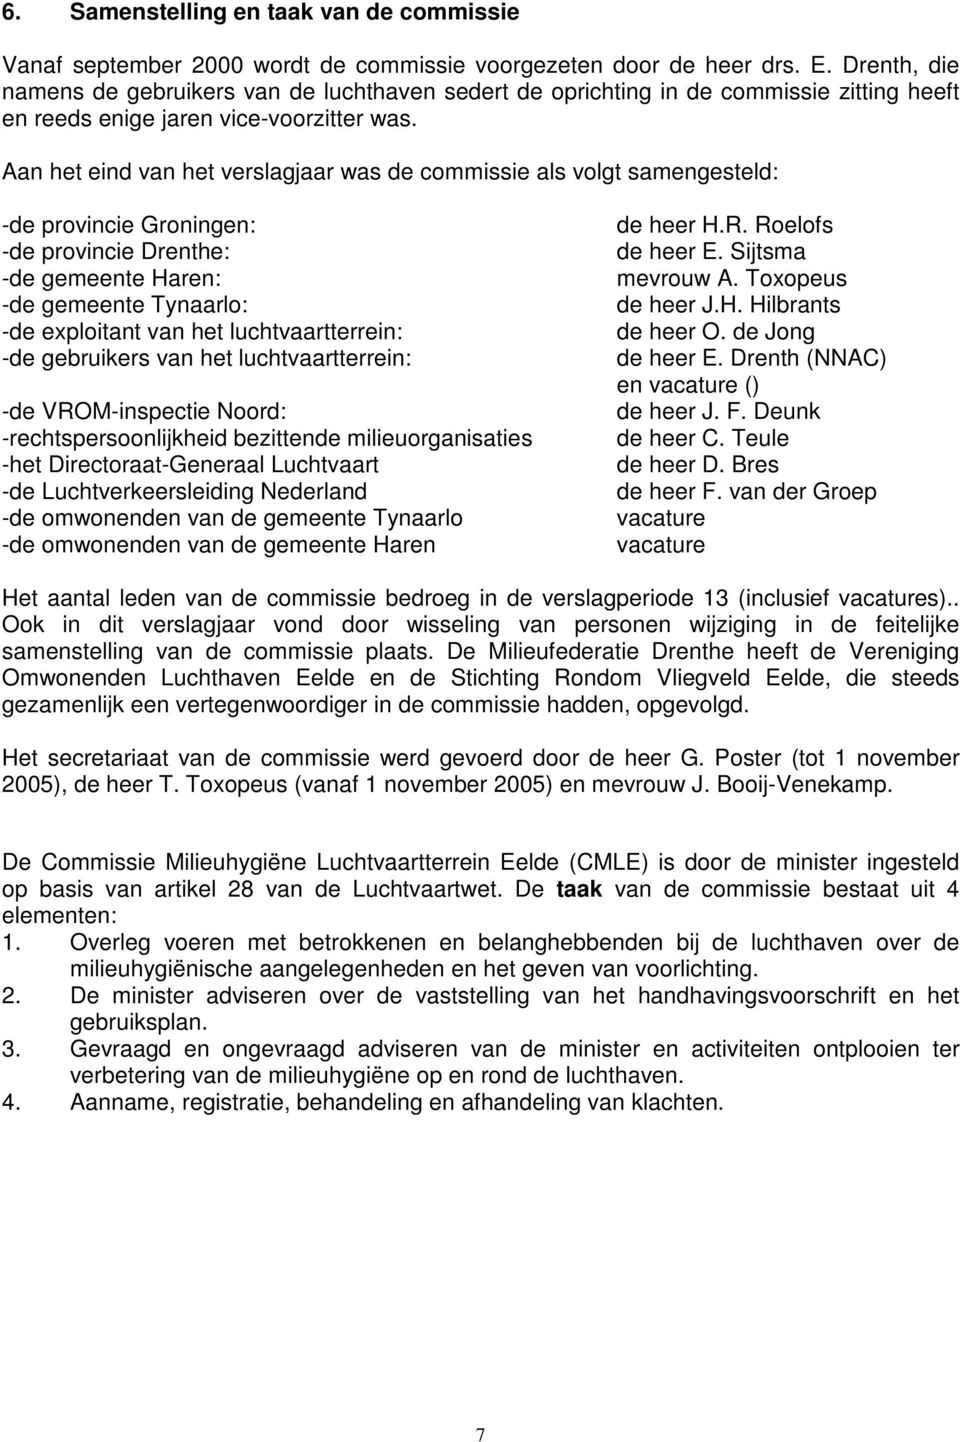 Aan het eind van het verslagjaar was de commissie als volgt samengesteld: -de provincie Groningen: -de provincie Drenthe: -de gemeente Haren: -de gemeente Tynaarlo: -de exploitant van het